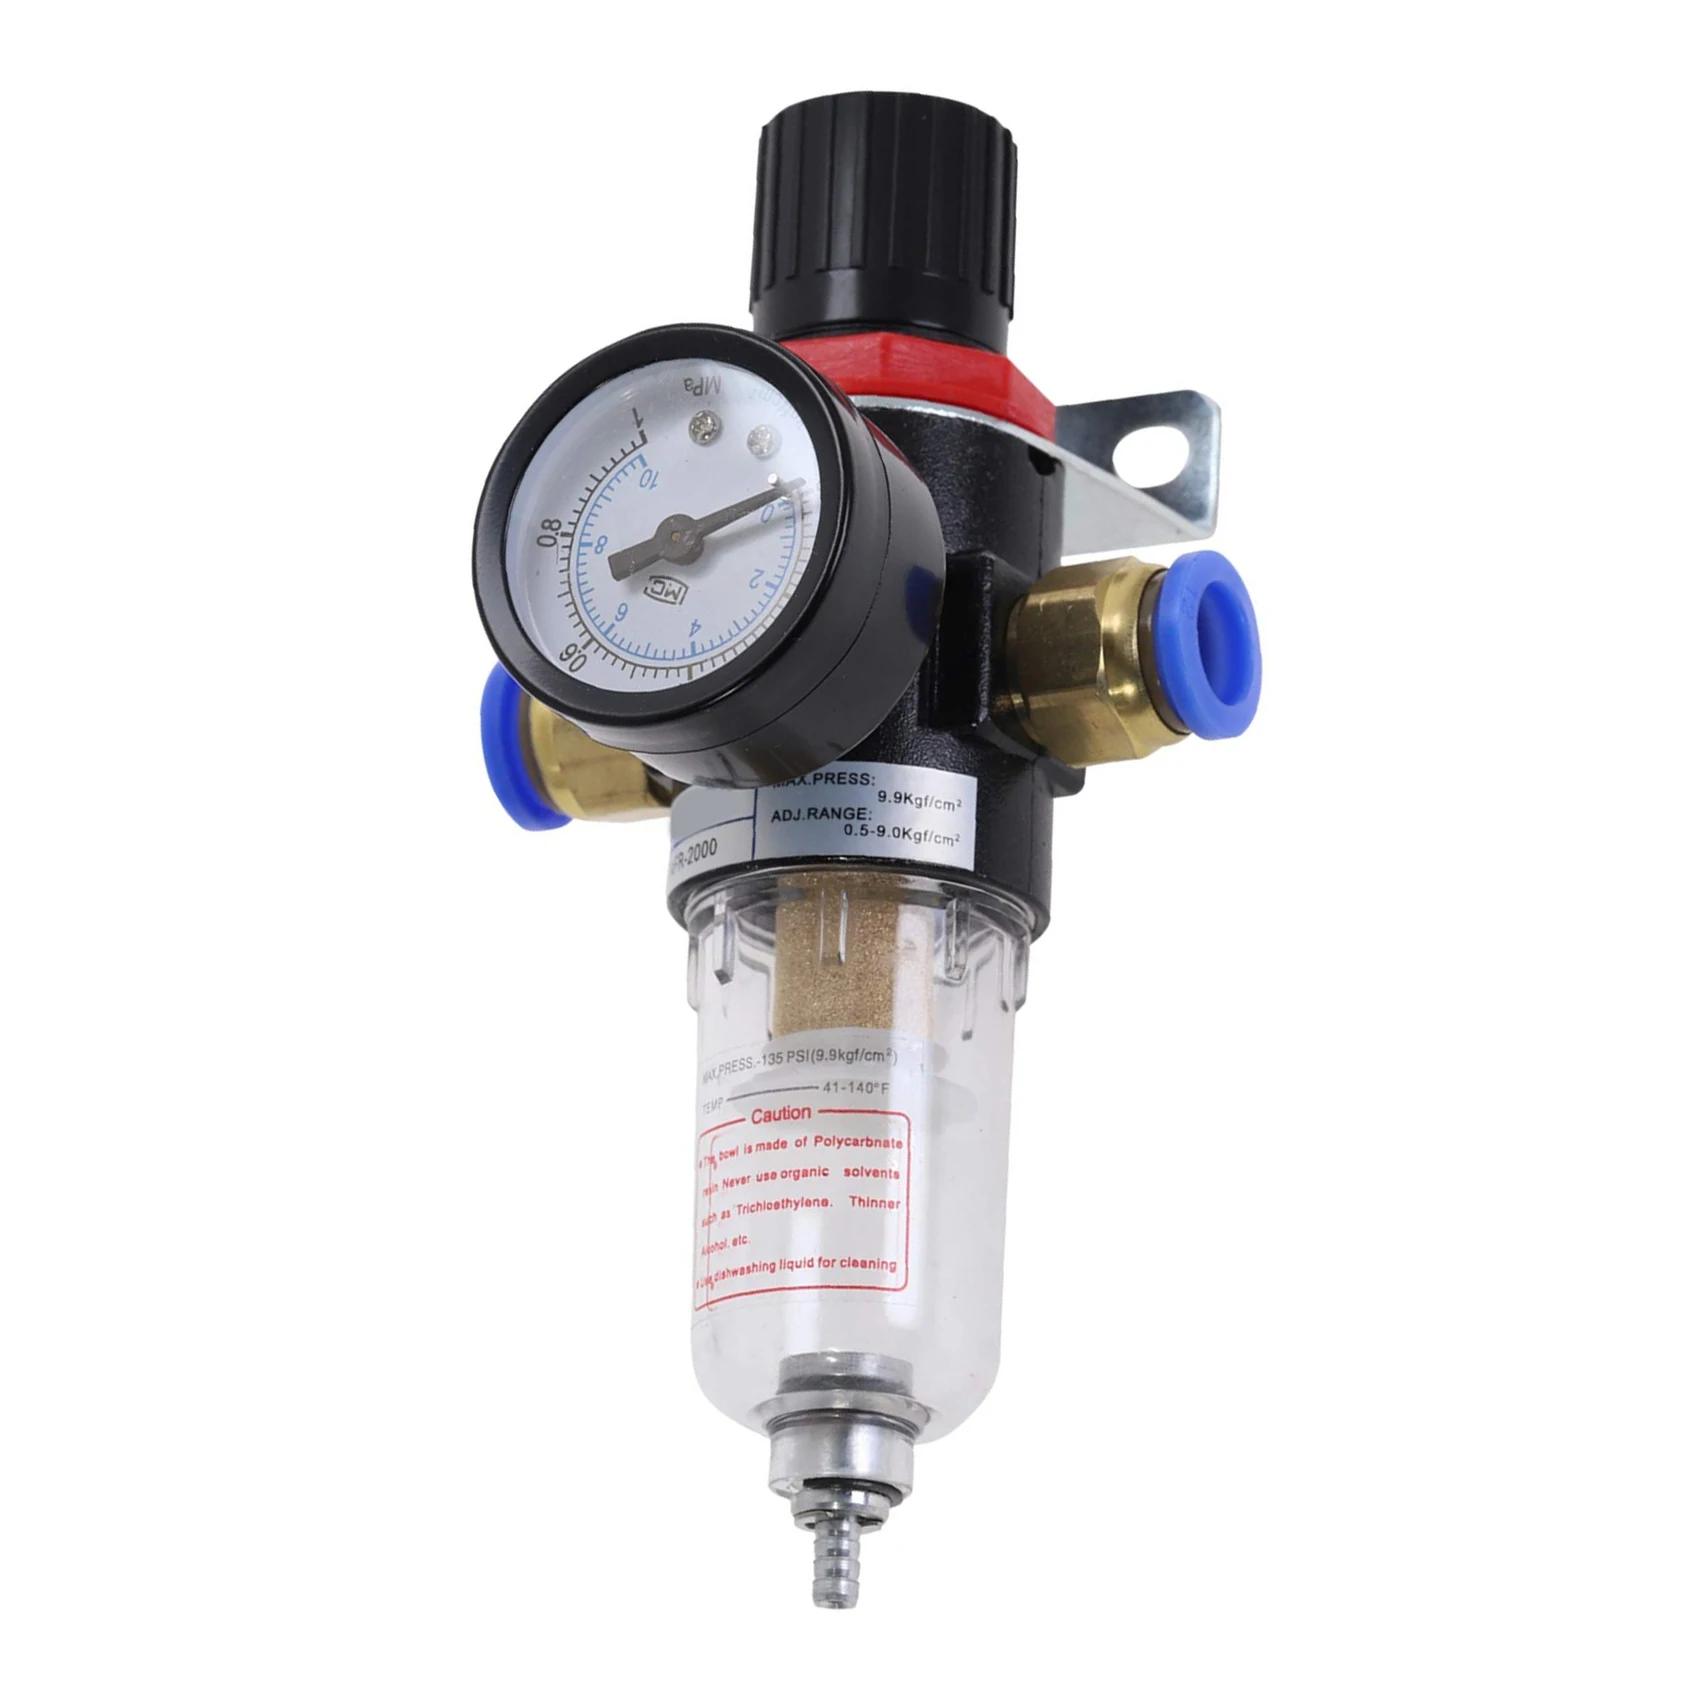 

Регулятор давления воздушного фильтра 1/4 дюйма AFR2000, сепаратор воды, воздушный инструмент, фильтр компрессора с разъемом 10 мм